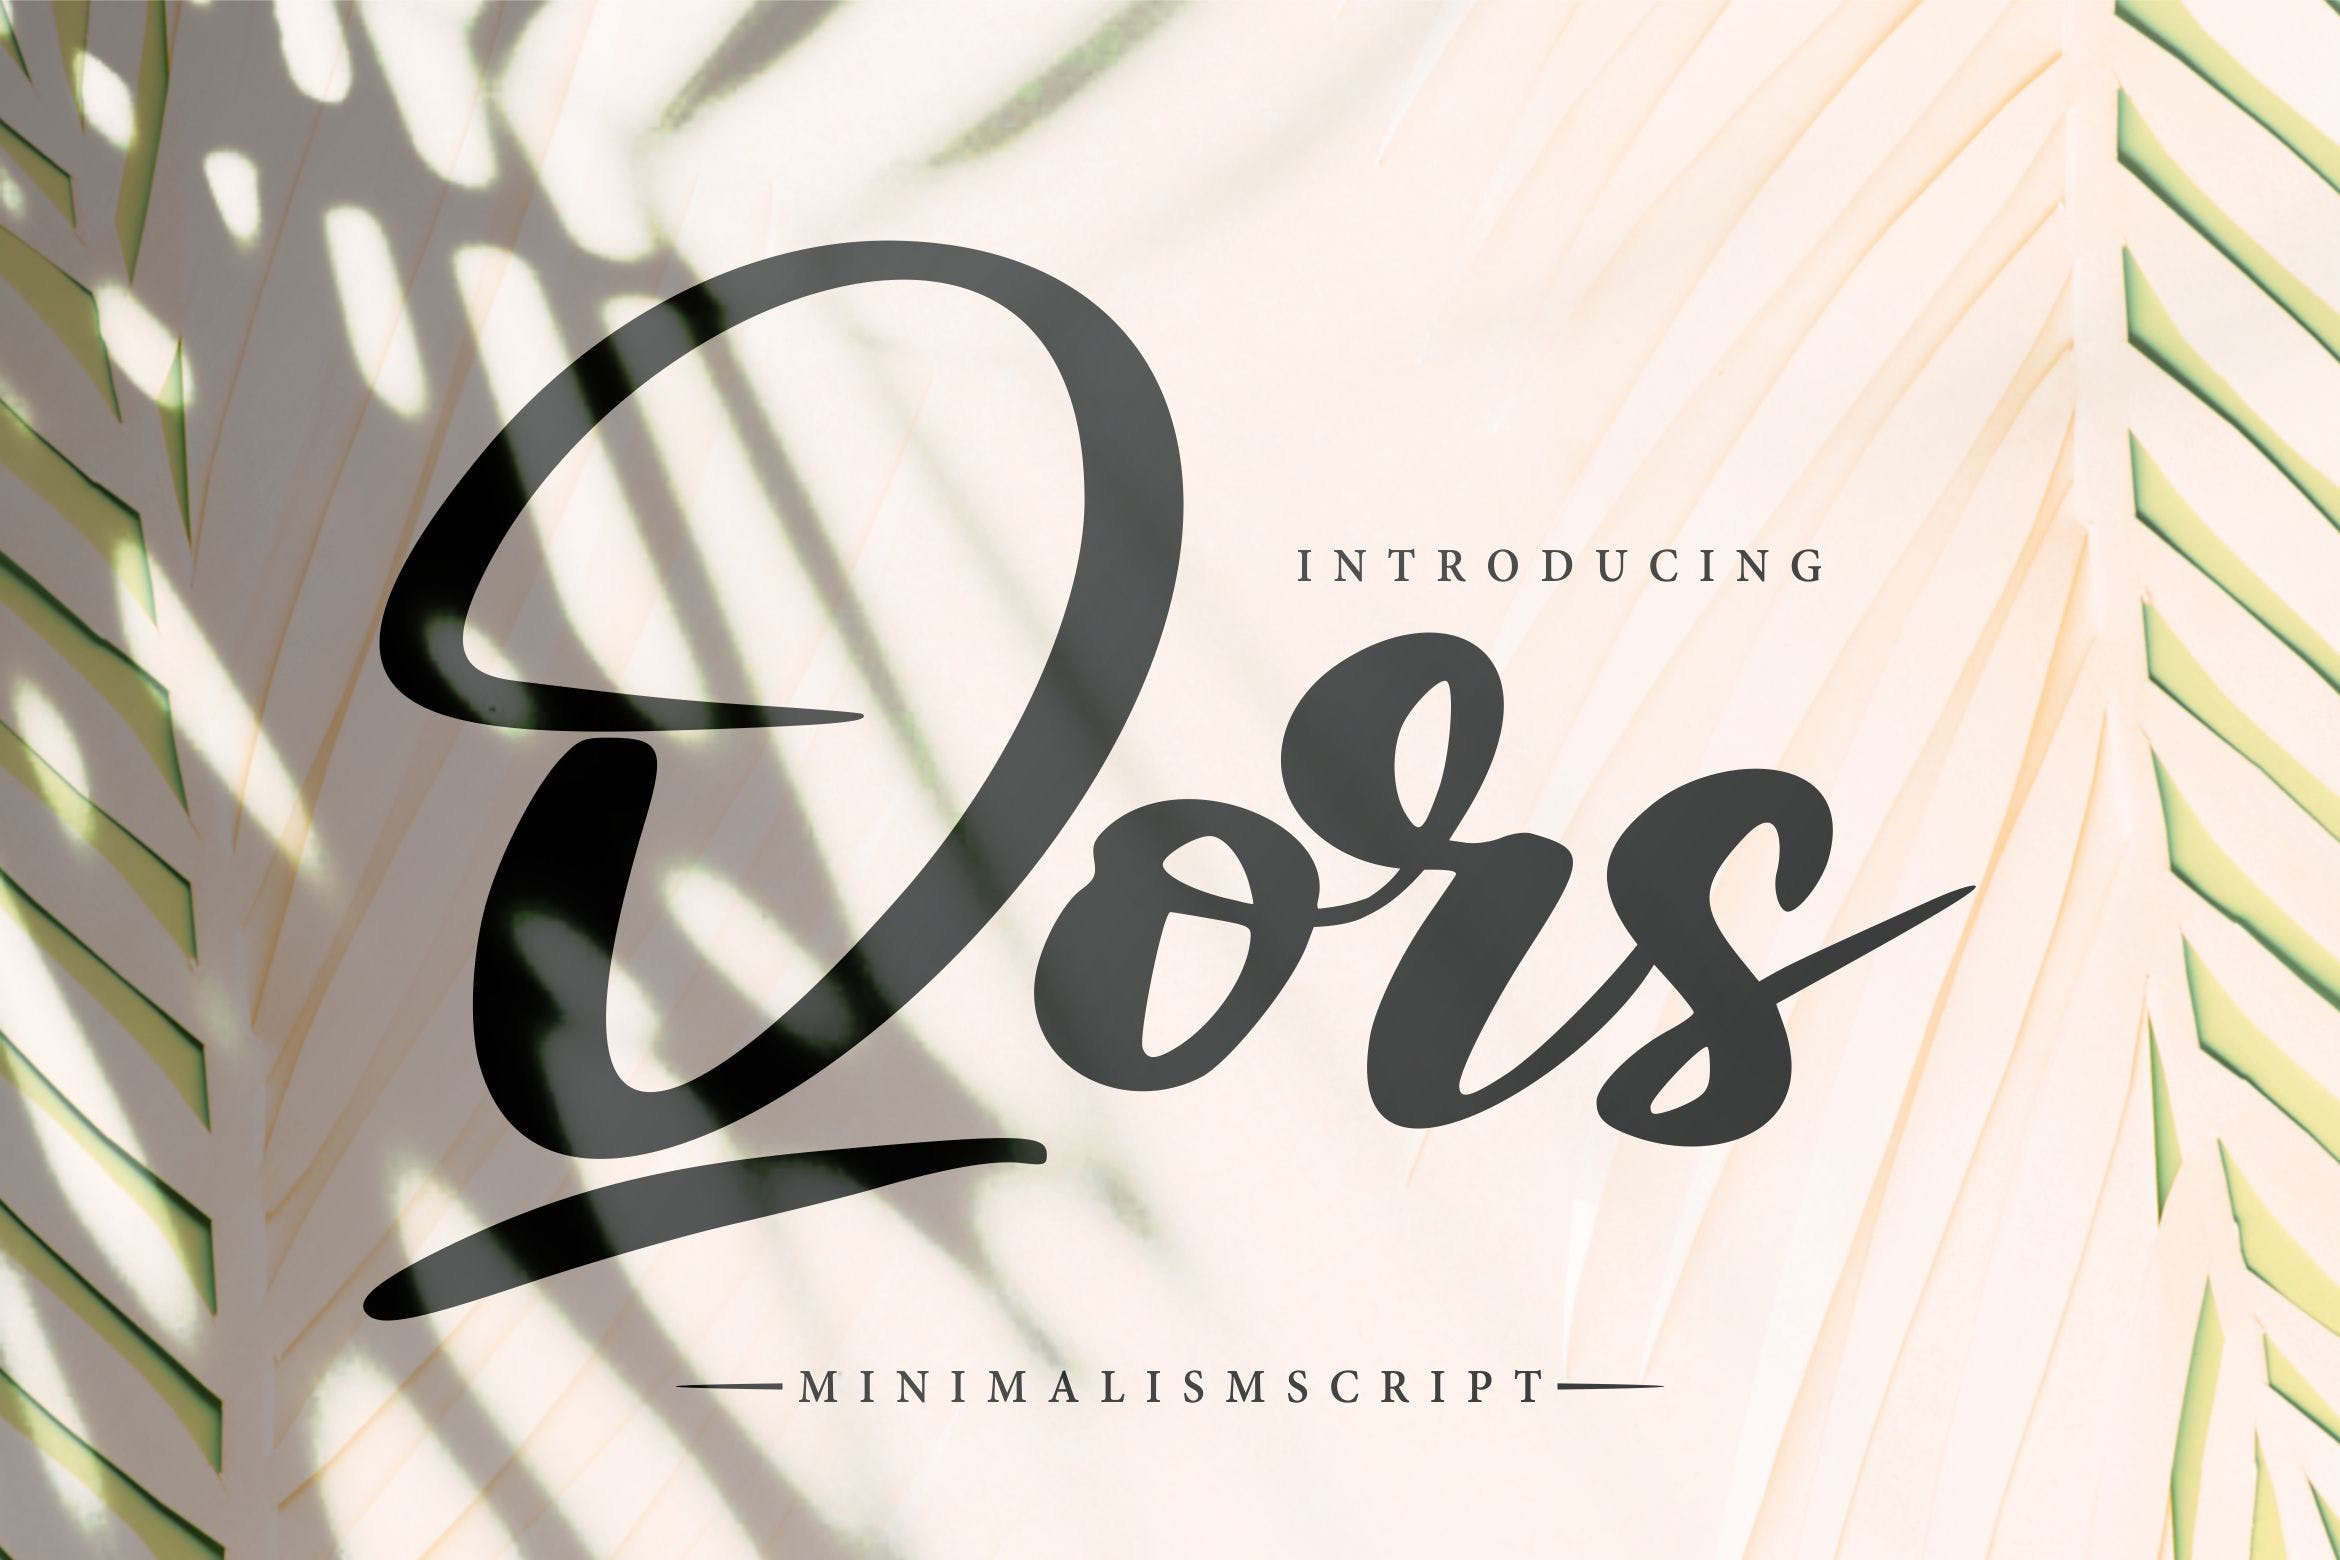 极简主义排版设计风格英文书法字体16设计素材网精选 Qors | Minimalism Script Font插图